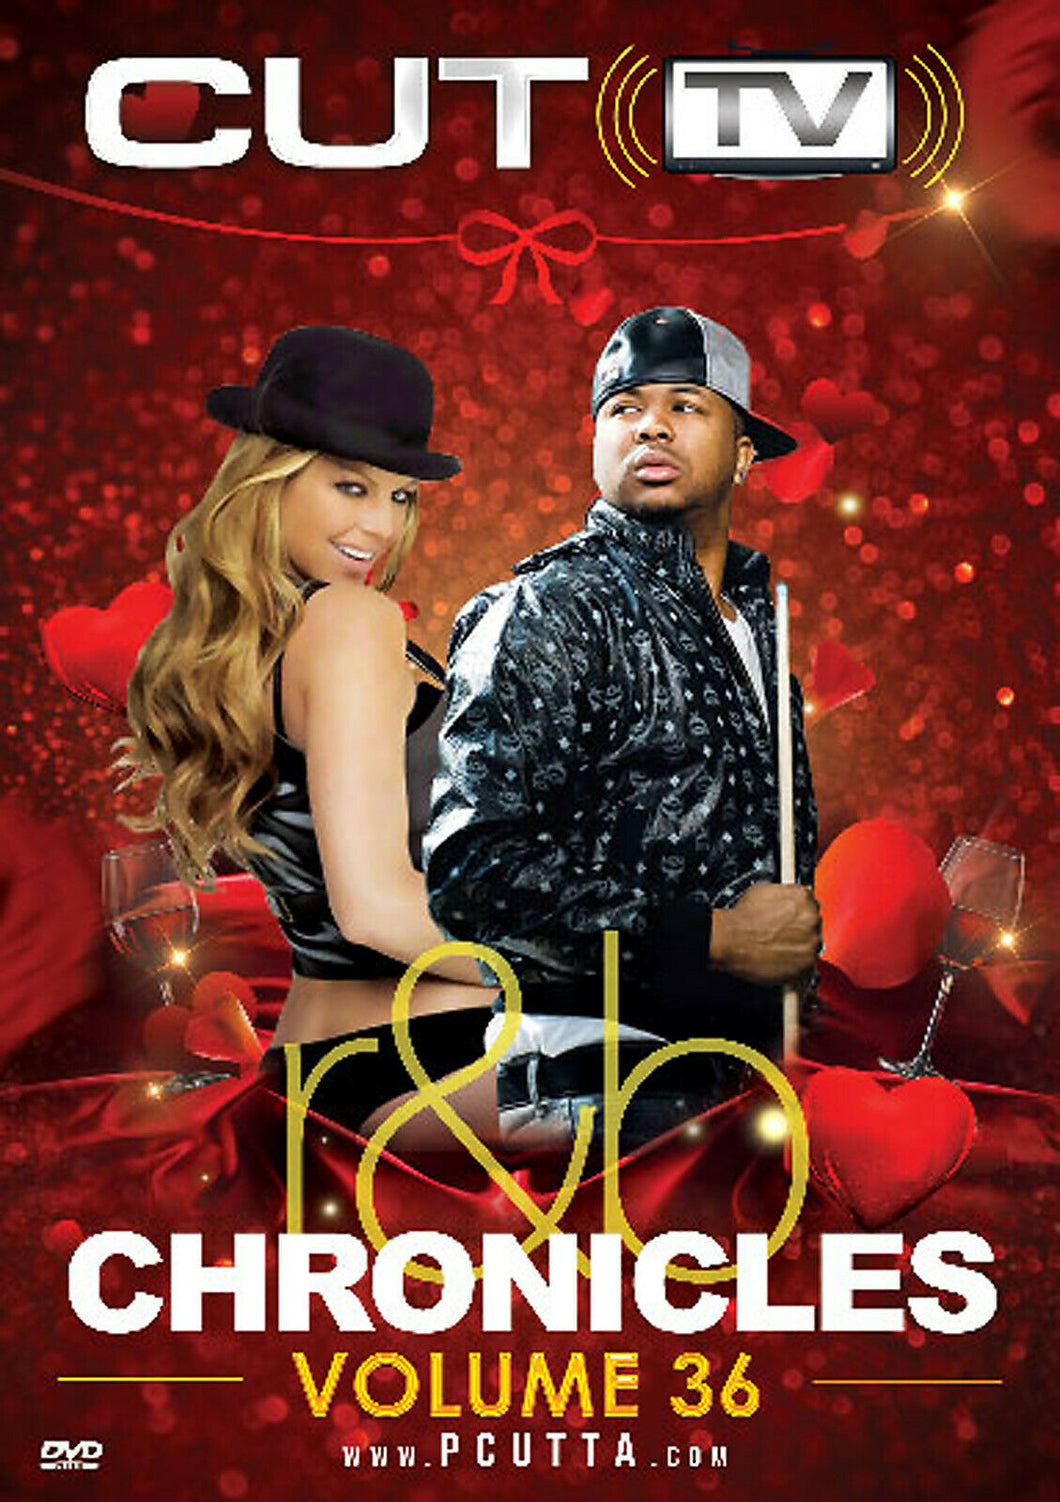 CUT TV - R&B CHRONICLES VOL. 36 (MUSIC VIDEO DVD) Miguel, Ne-Yo, Chris Brown...